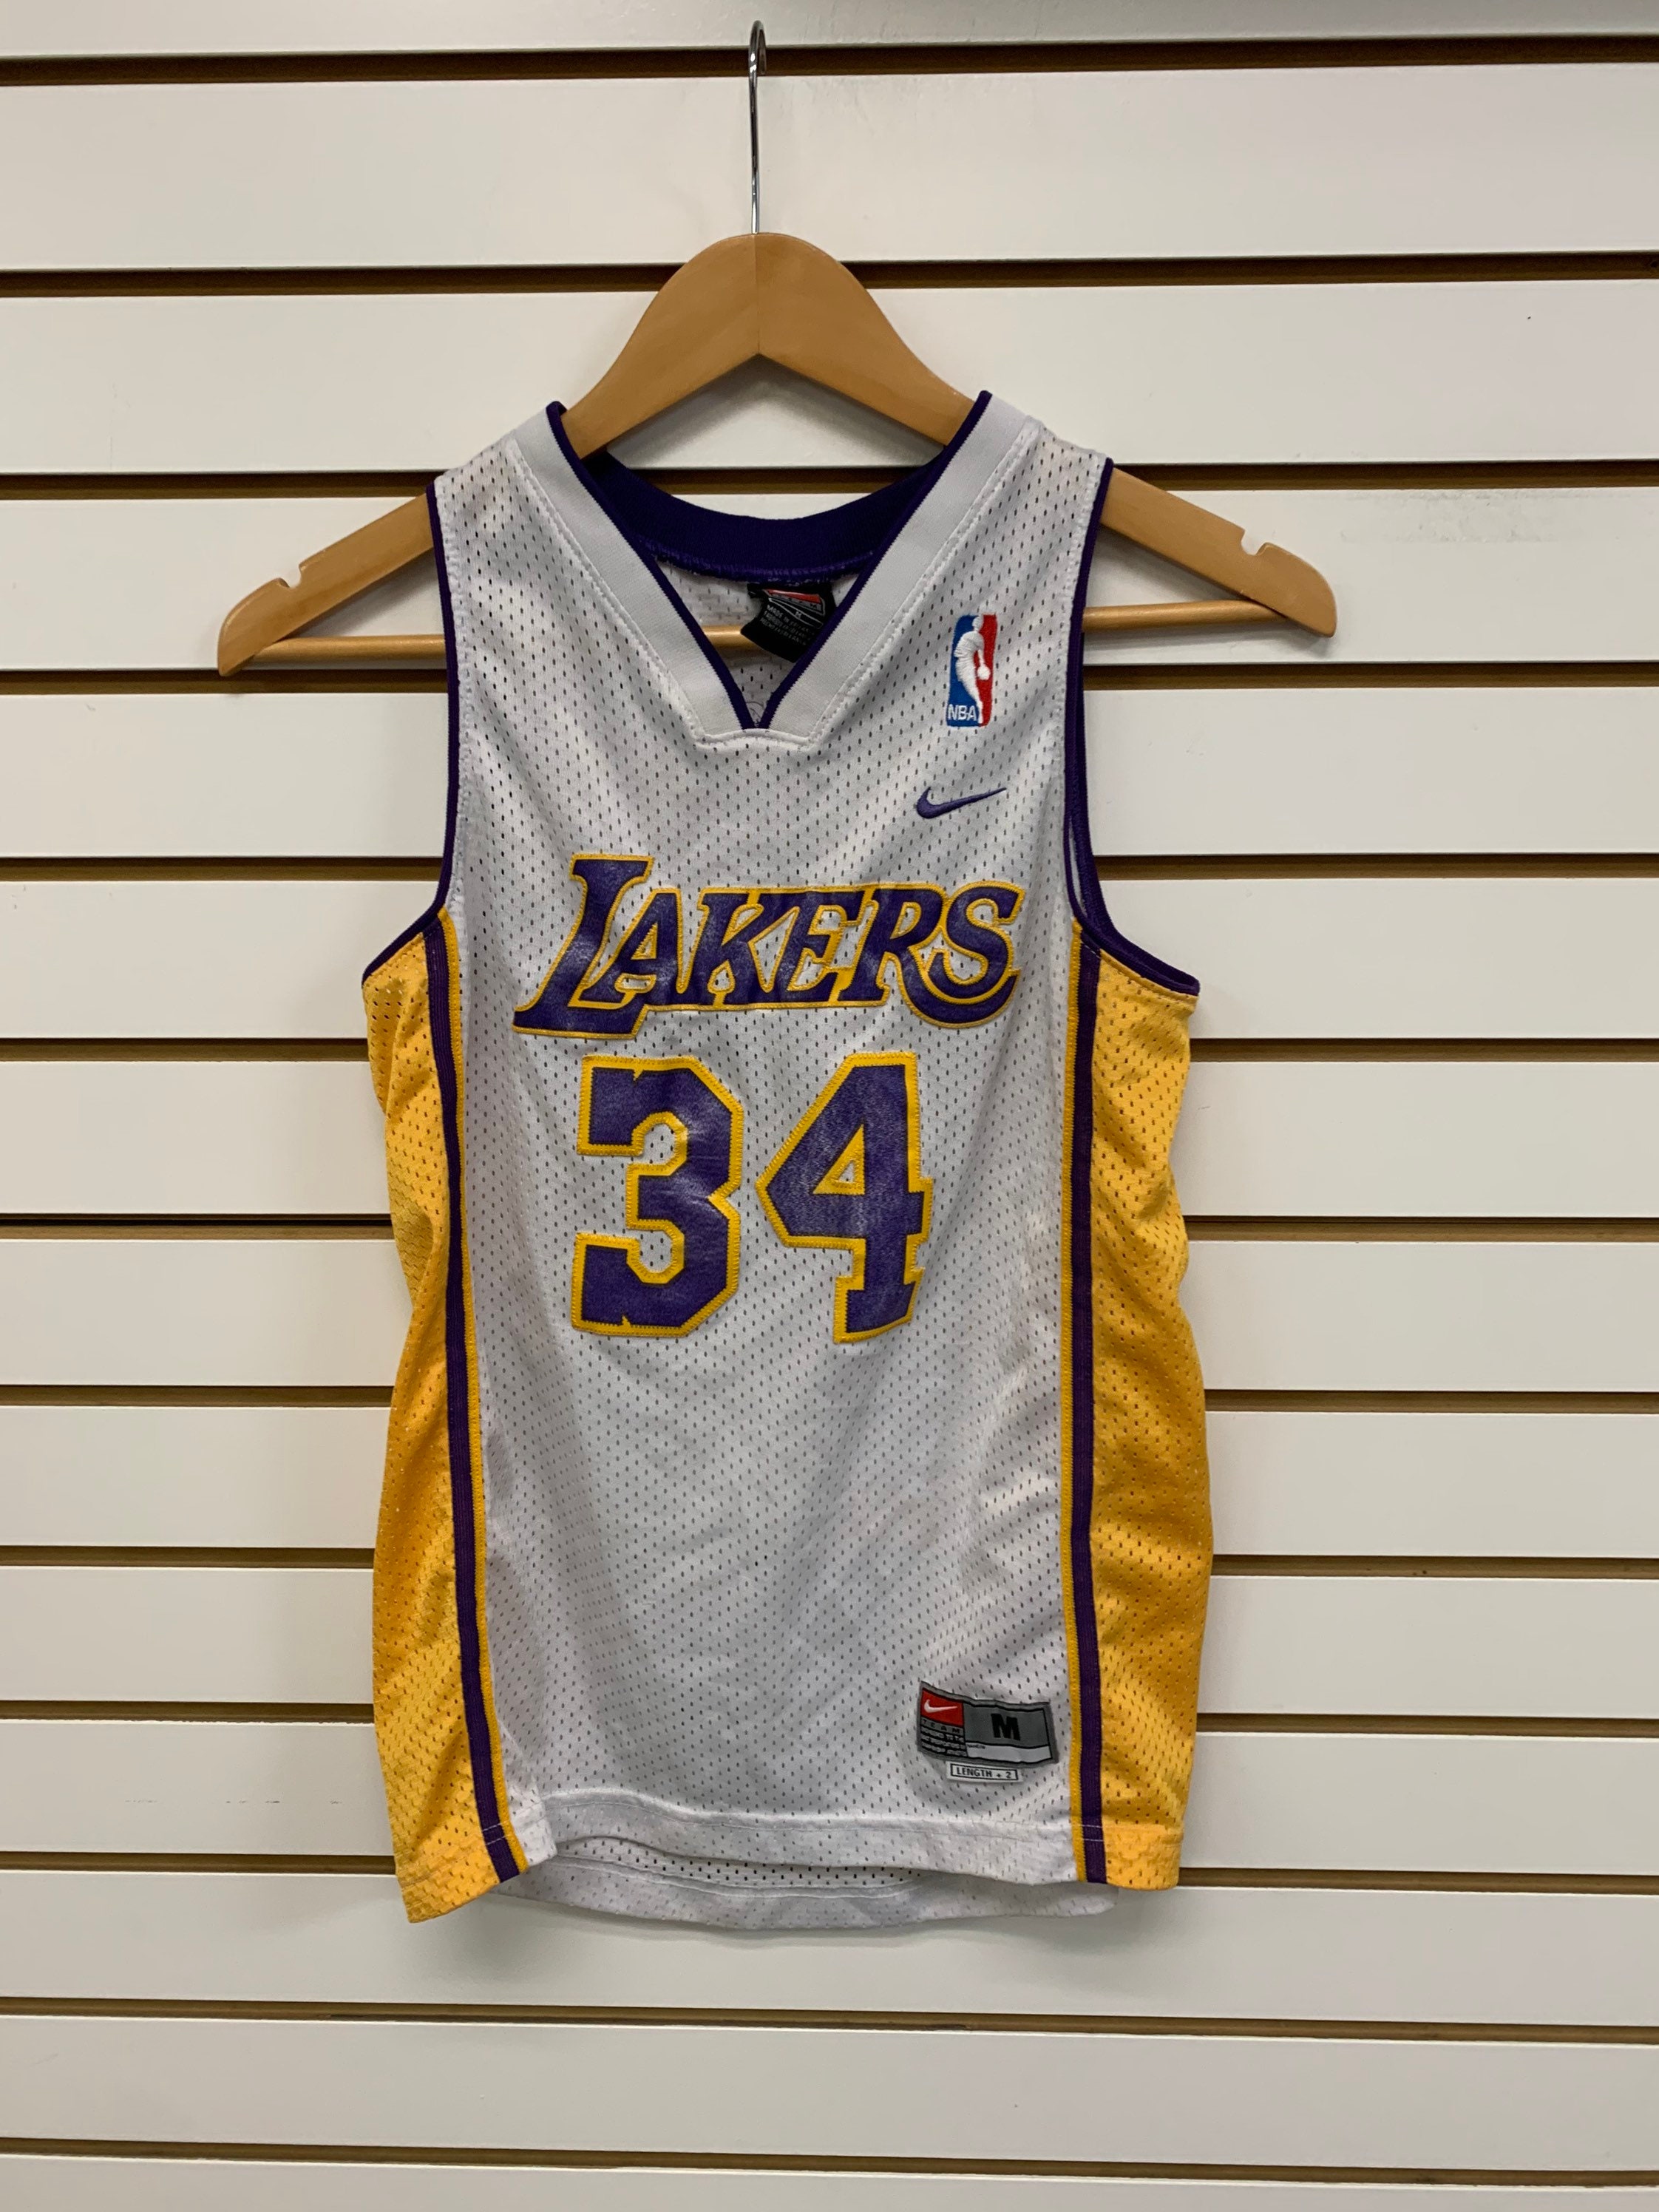 Vintage Nike NBA Lakers Shaq O'Neil 34 Jersey 1990s Size 2XL